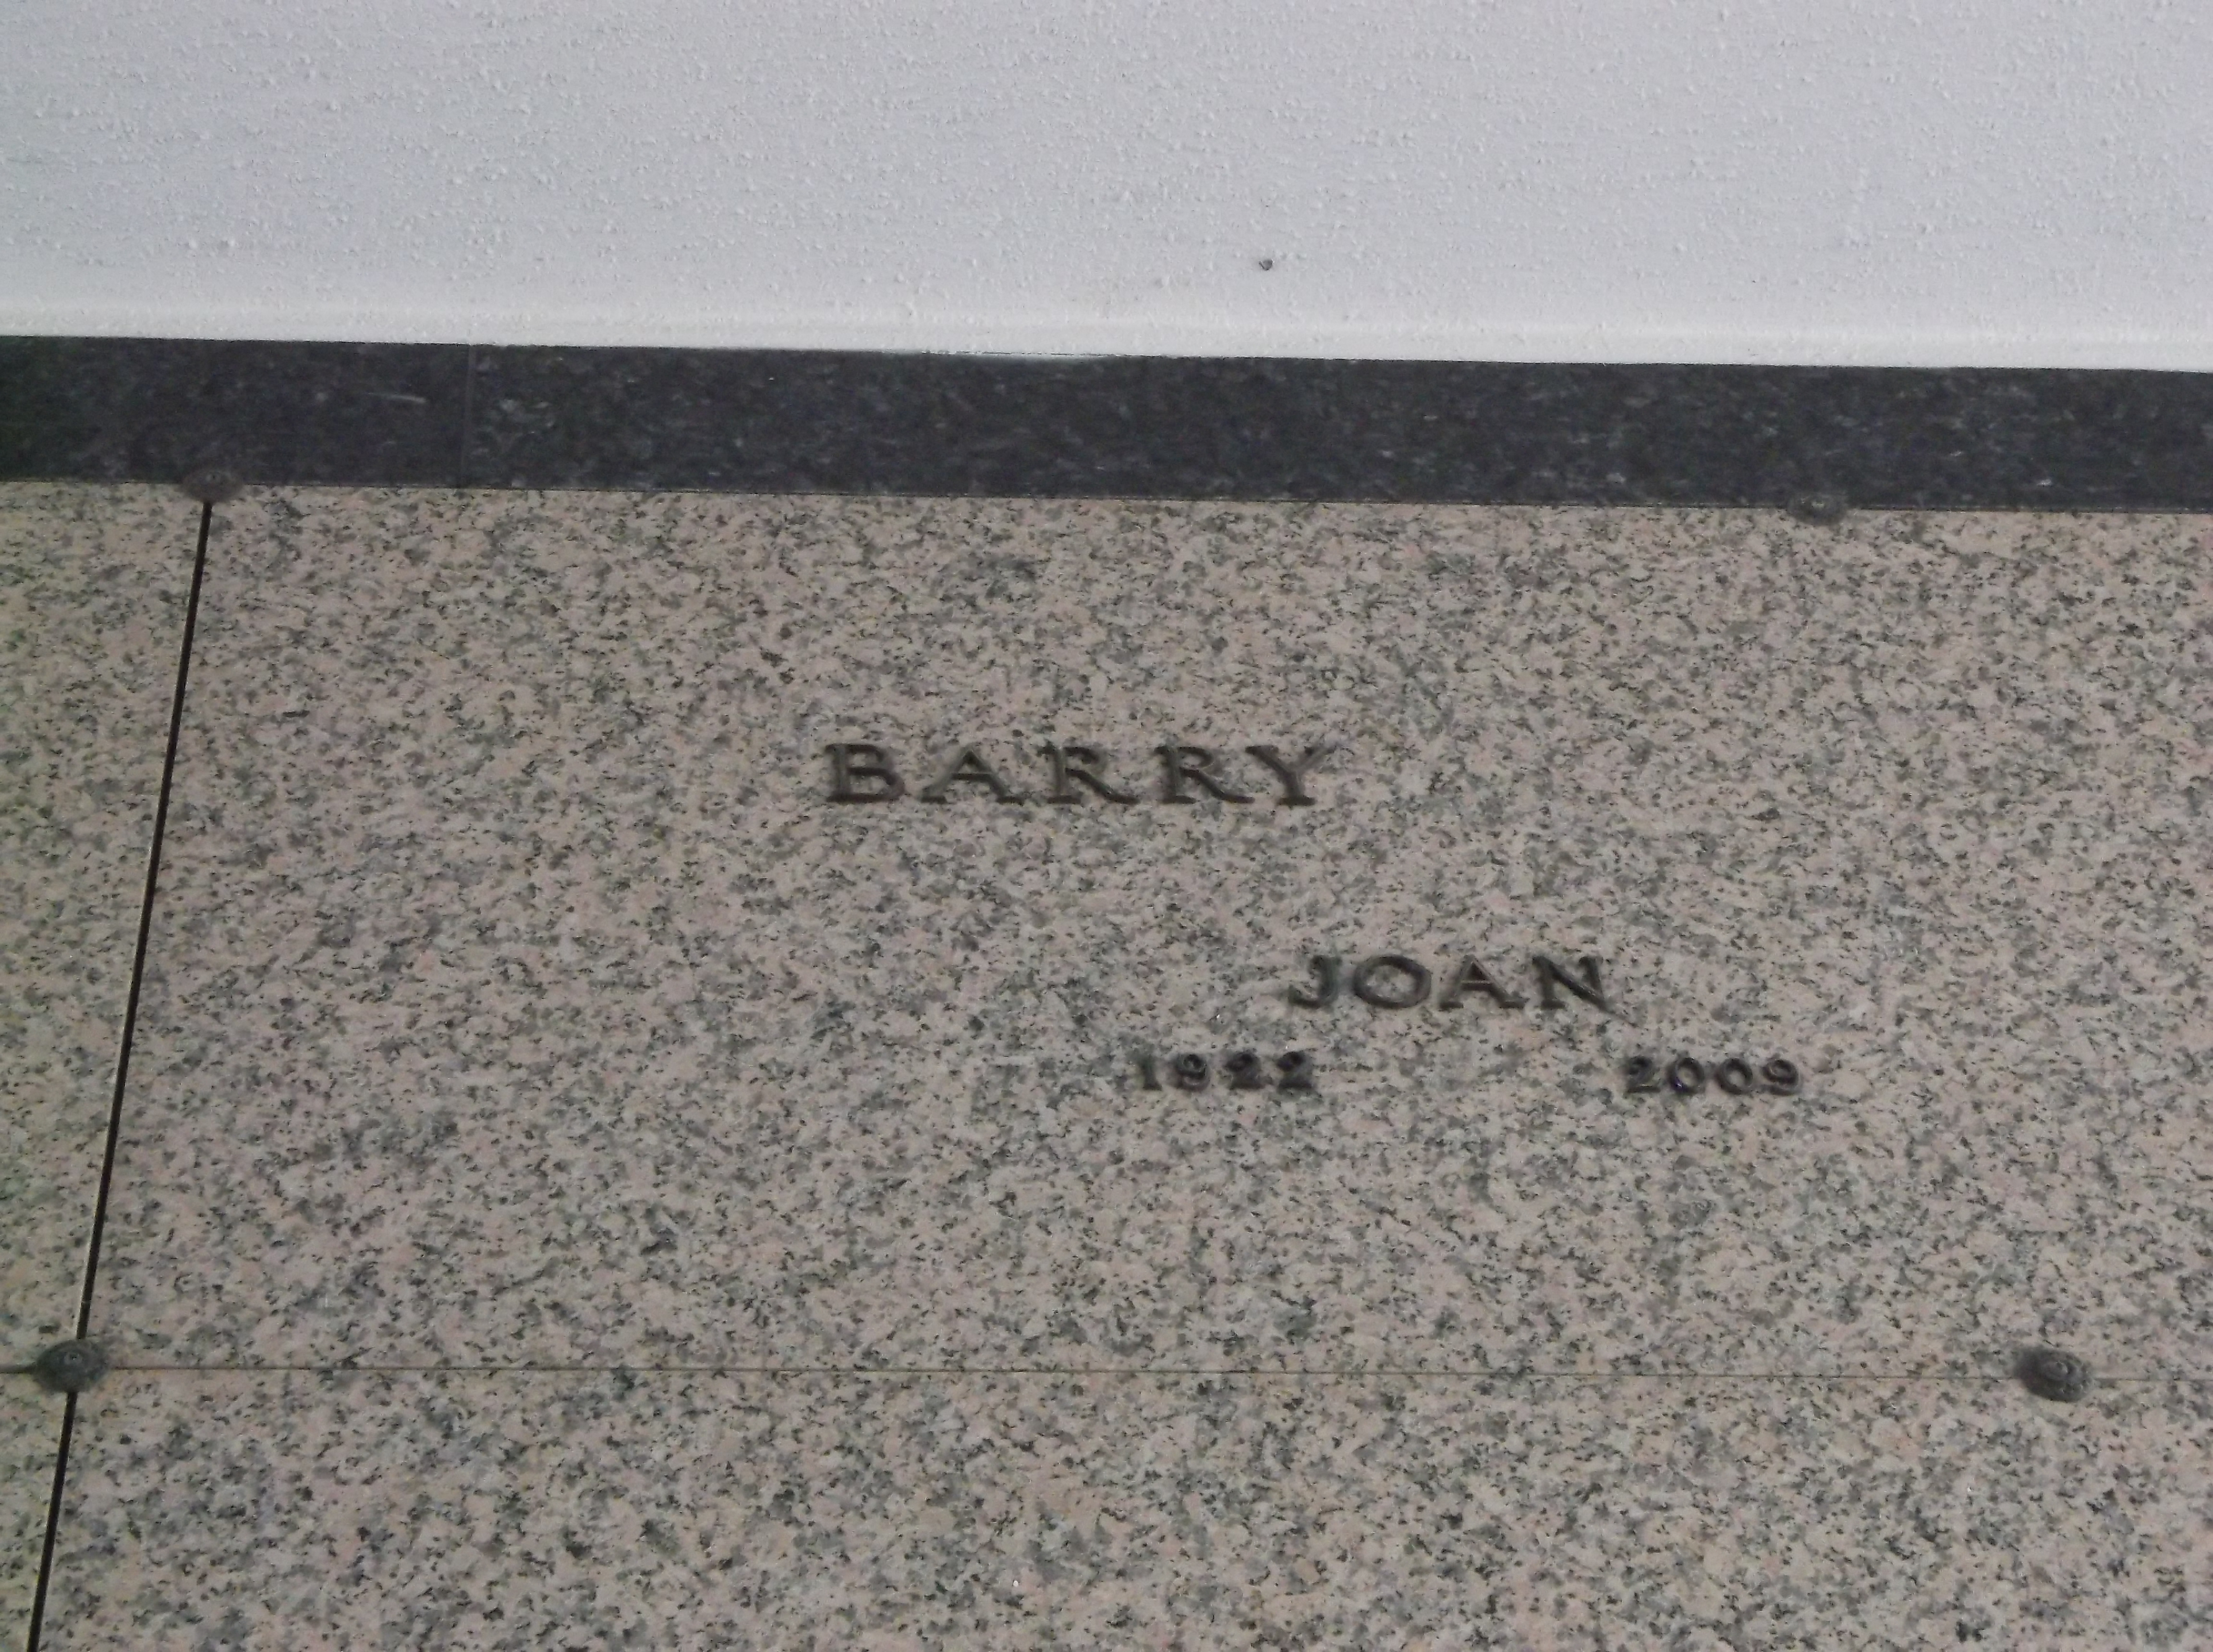 Joan Barry